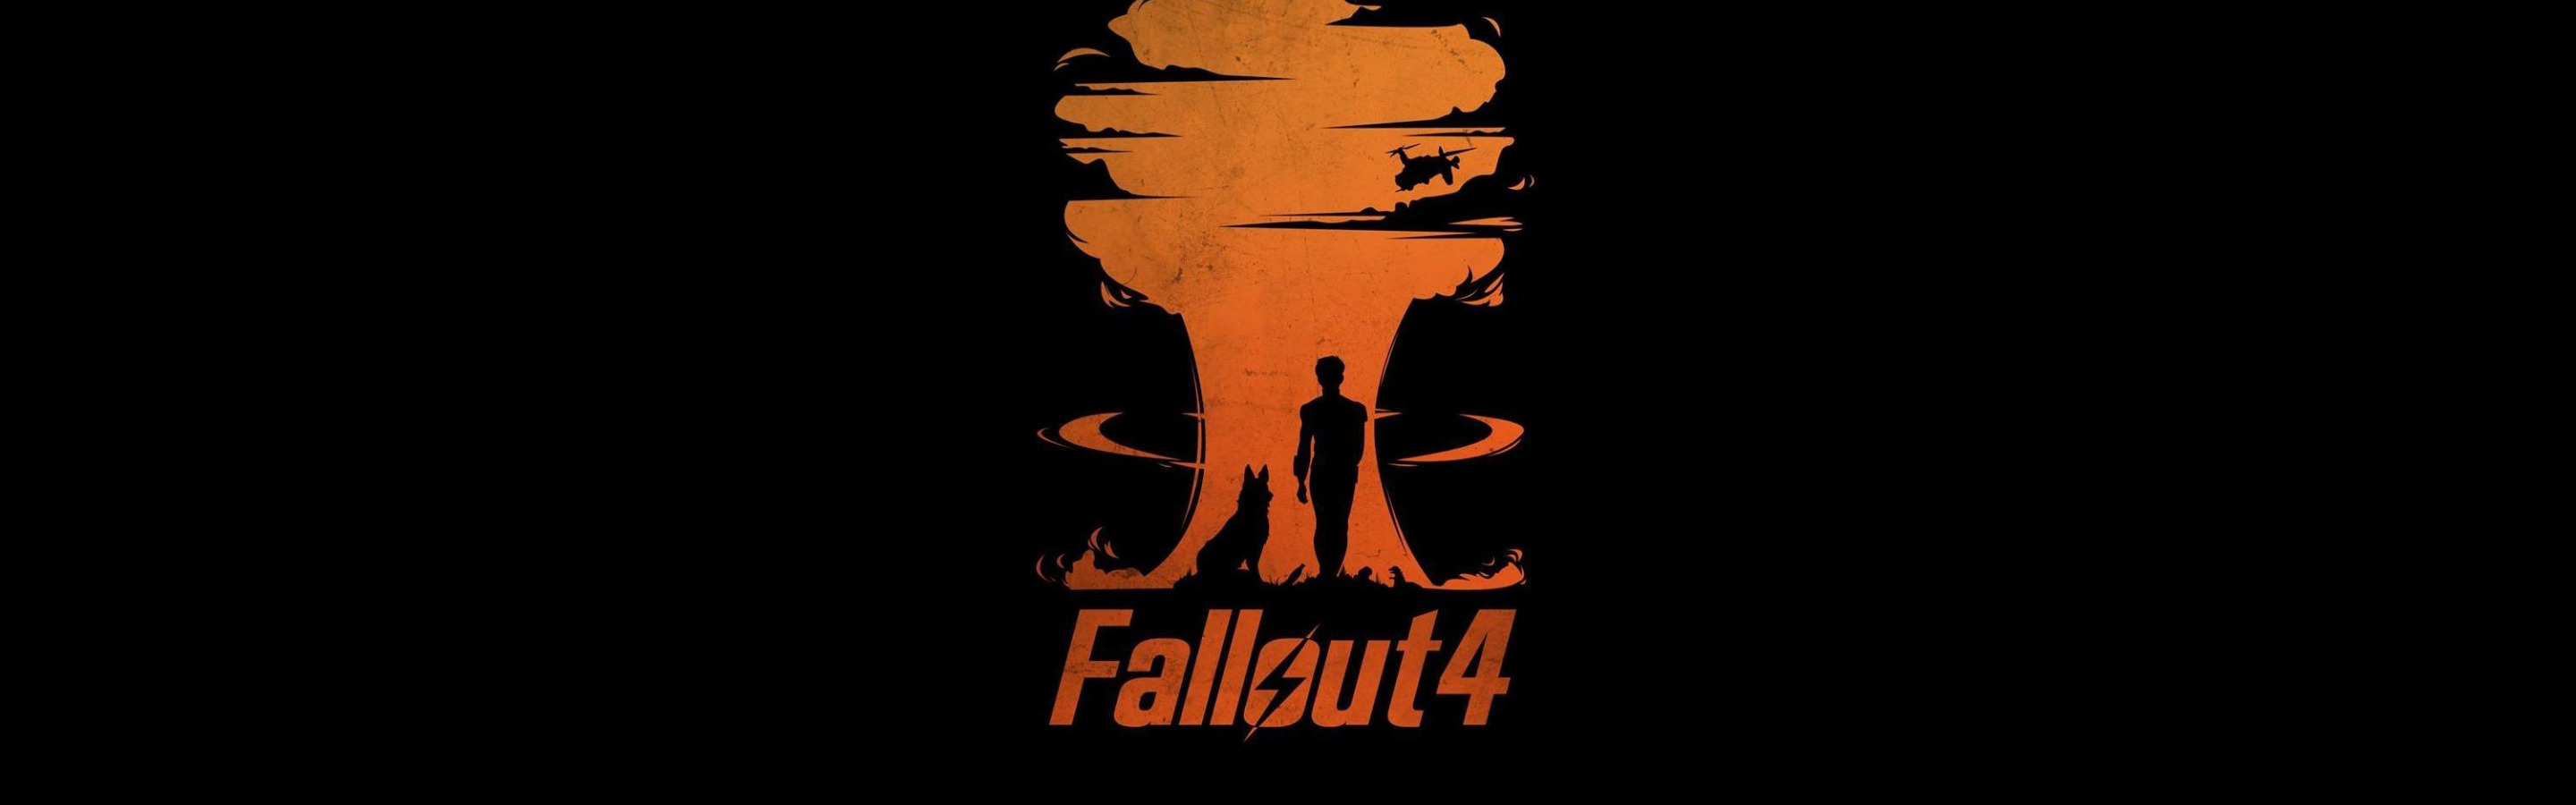 Fallout 4 разрешение 2560 1440 фото 59